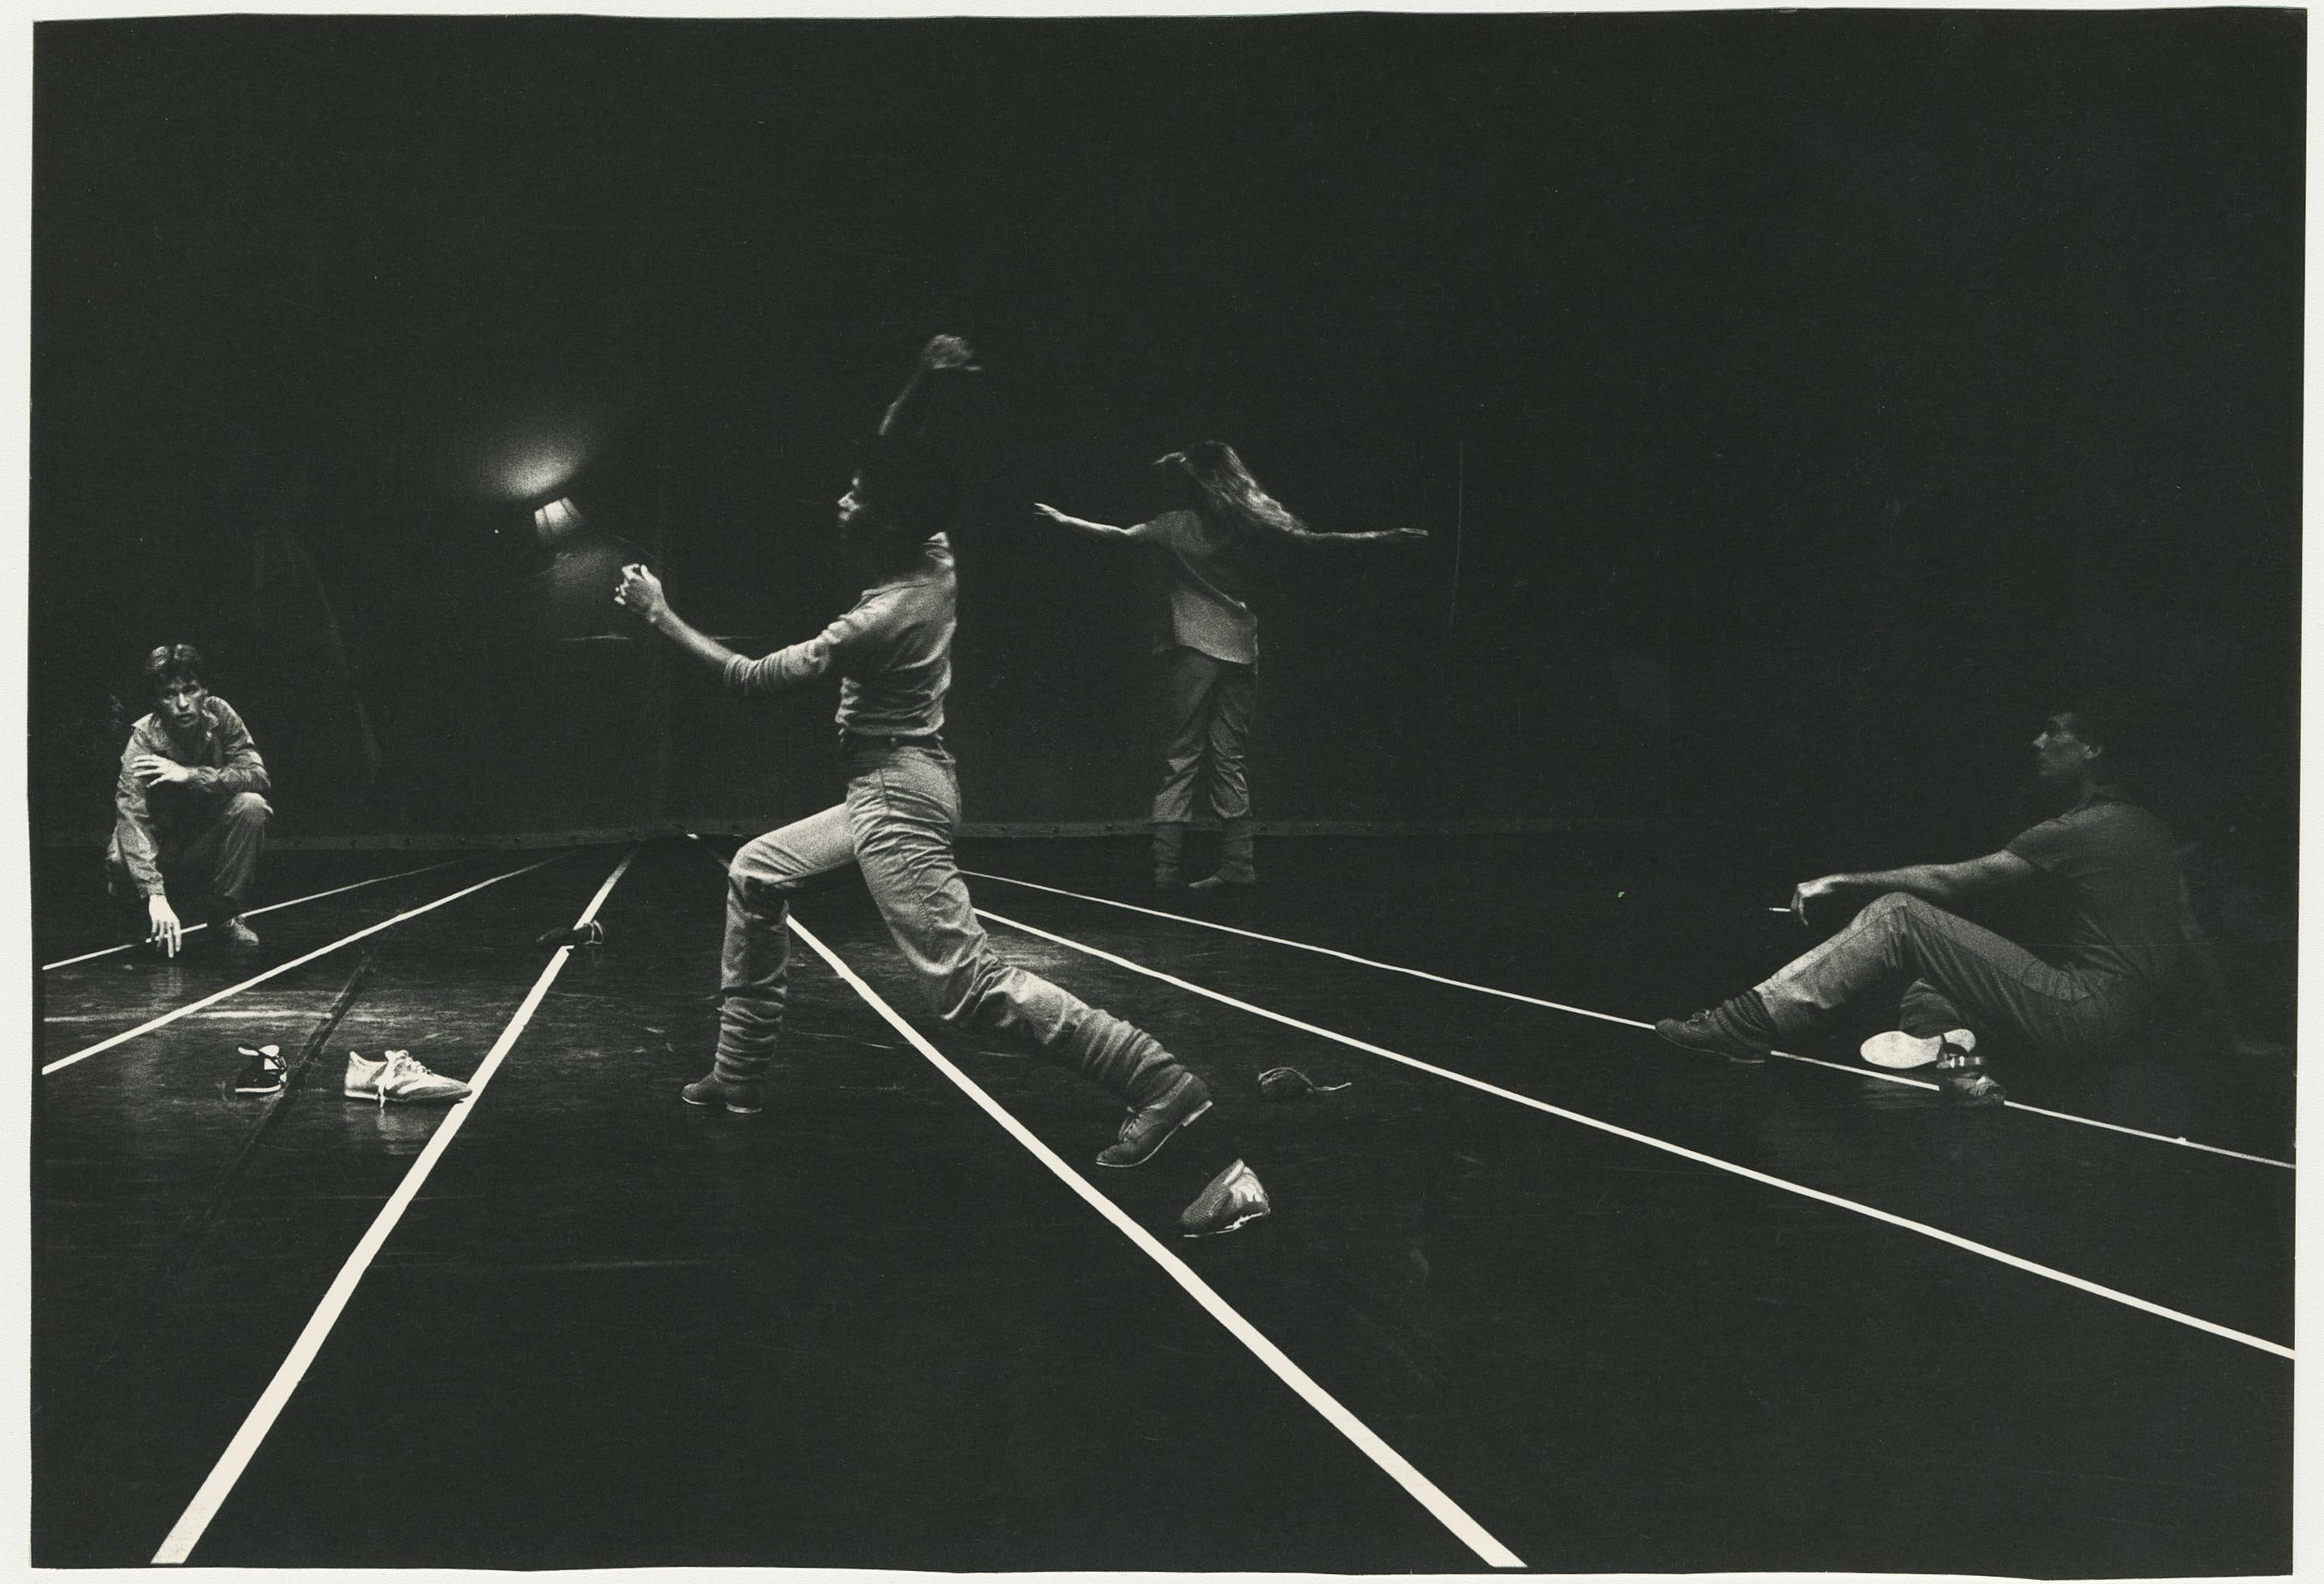 Quatre danseurs en mouvement sur scène – lignes blanches parallèles au sol